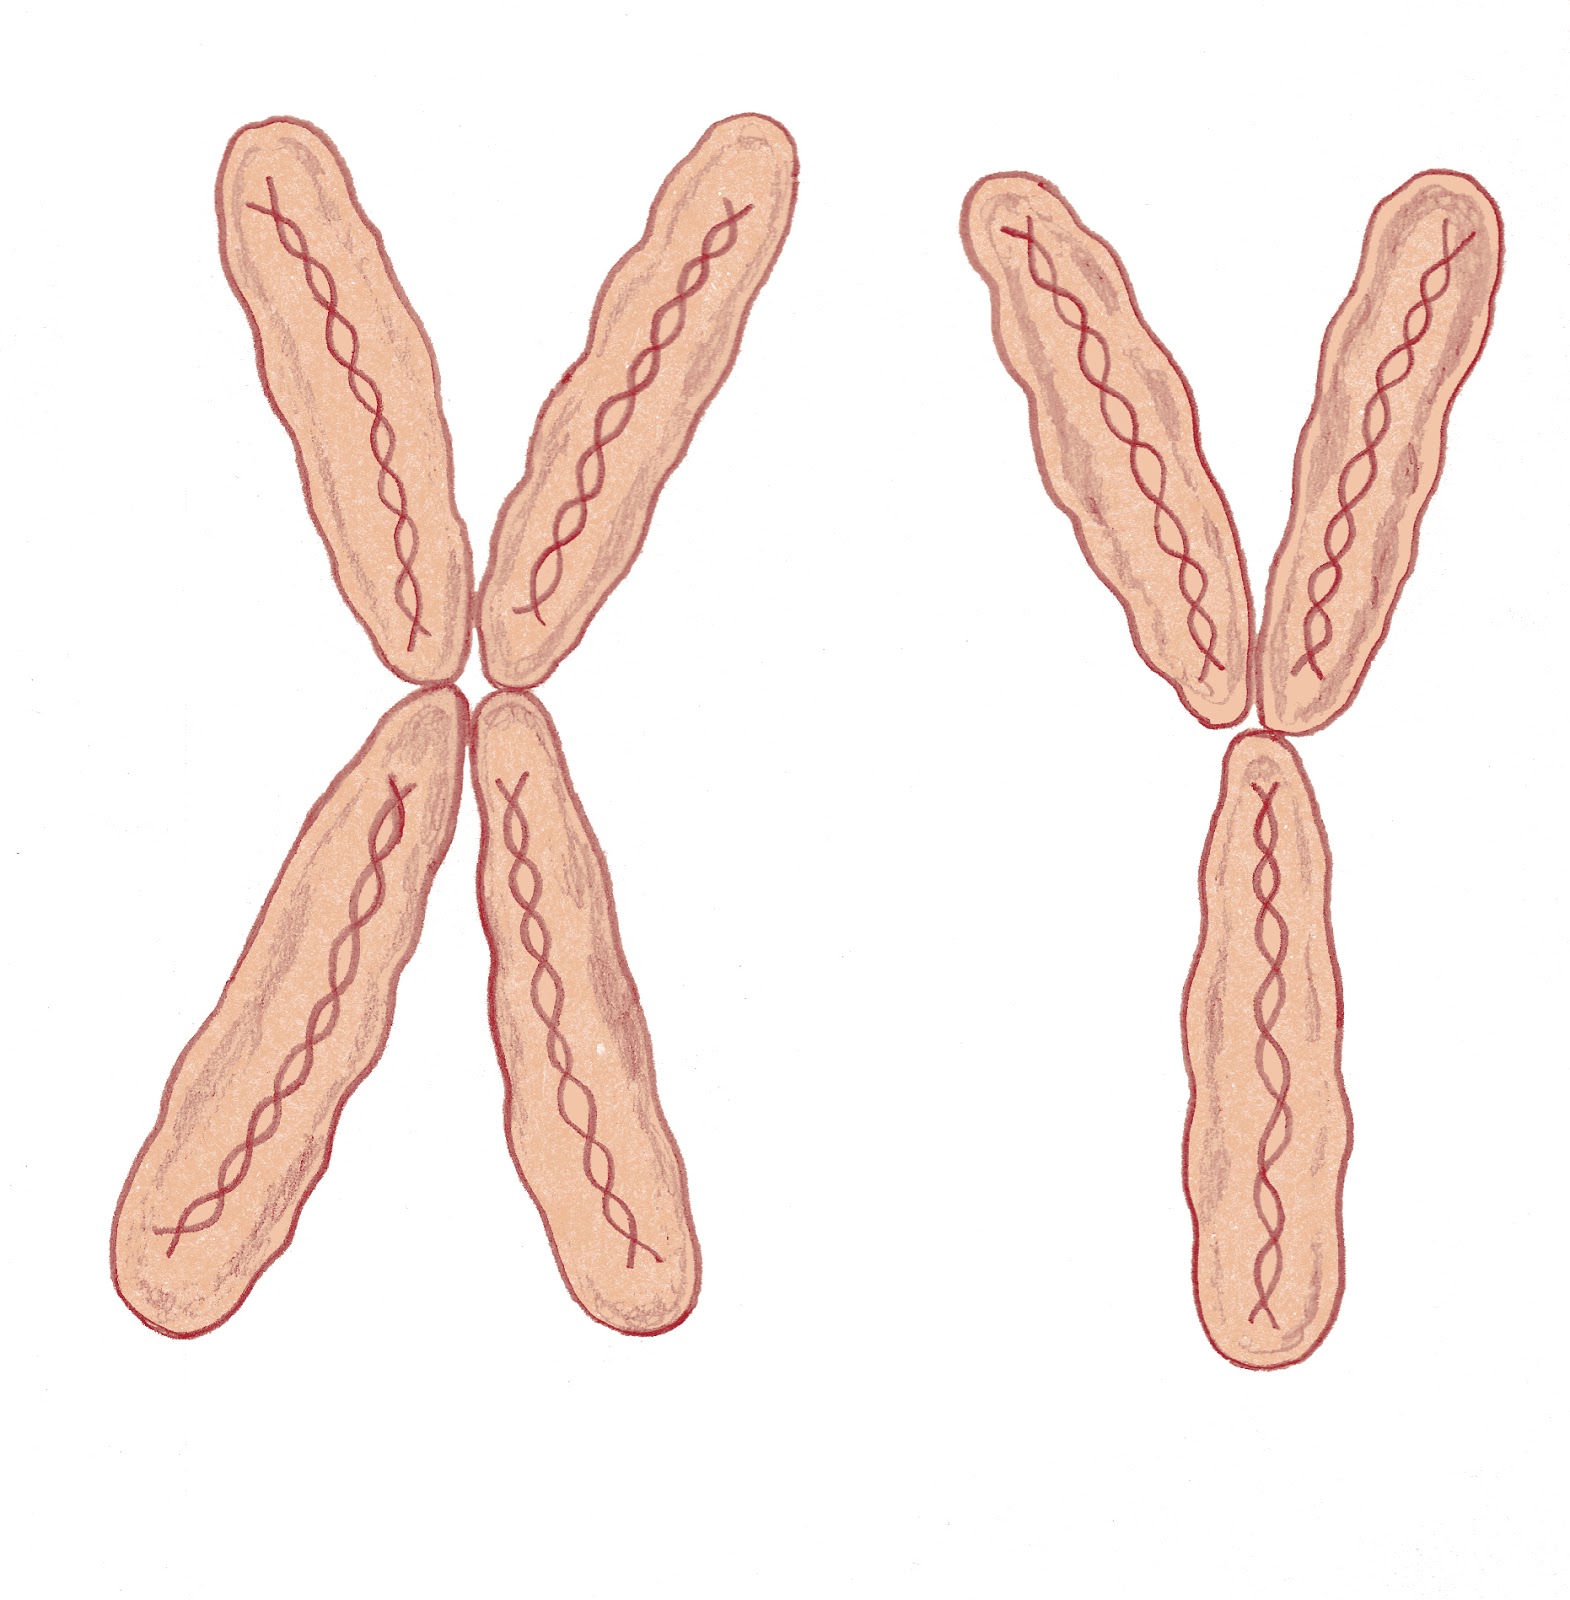 Х хромосома это мужская. Х И Игрек хромосомы. Женские и мужские хромосомы. Мужские хромосомы. Женские хромосомы.